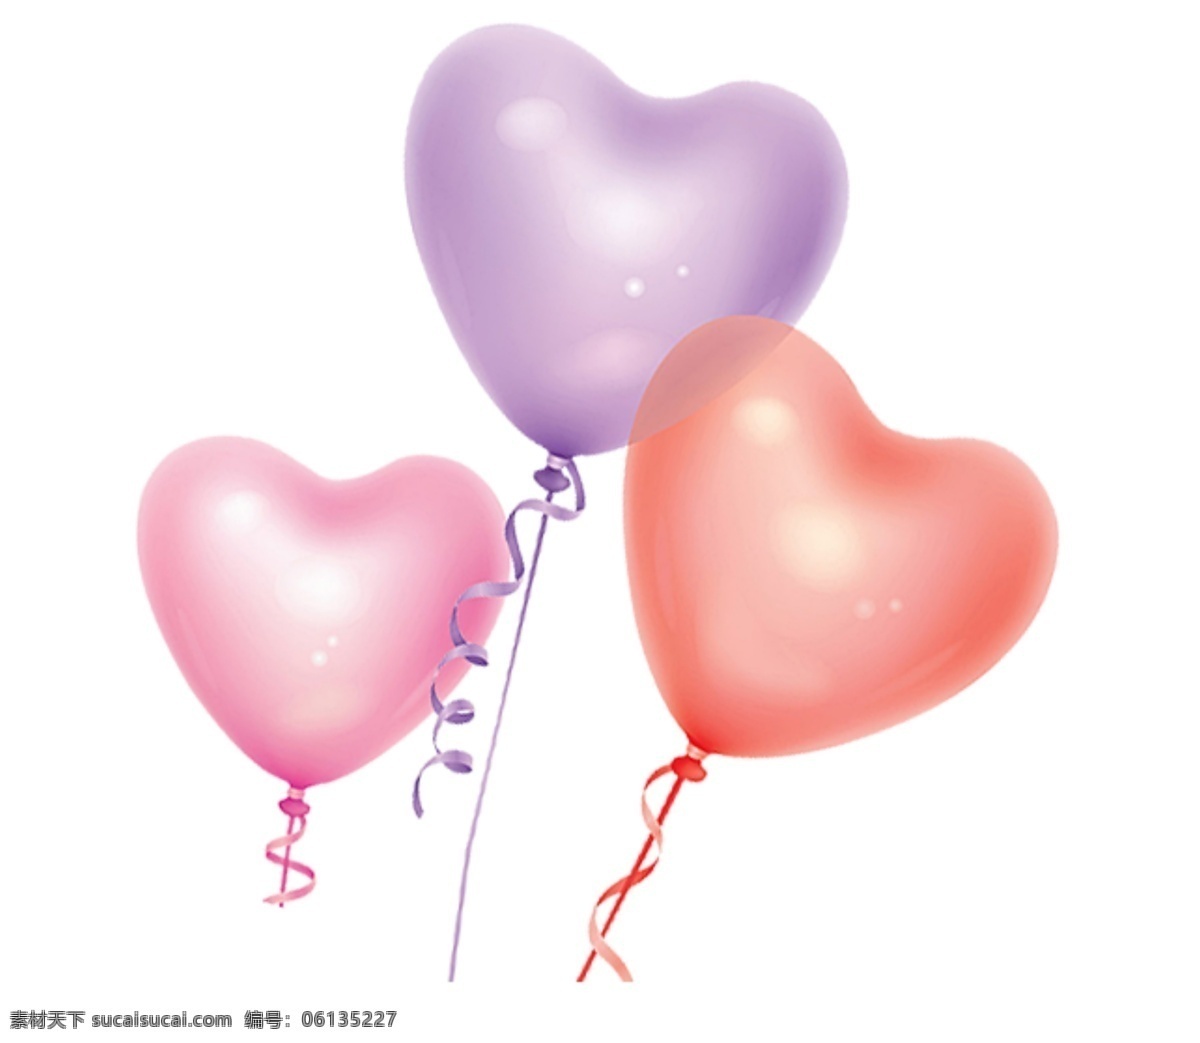 心形气球 气球 心形 爱心 彩色气球 彩色爱心 爱心气球 素材图